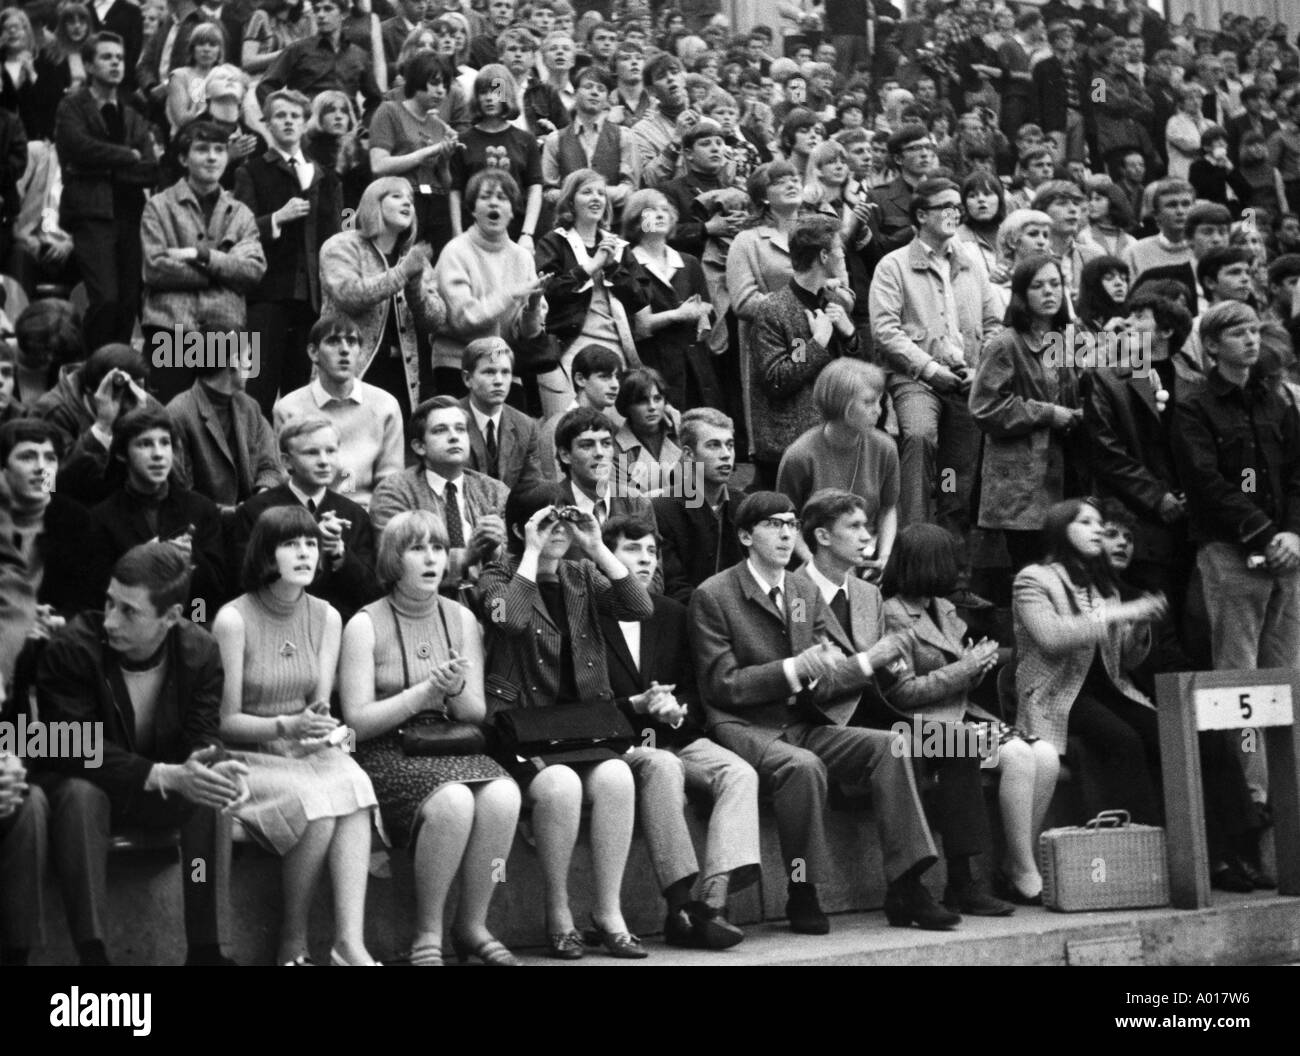 Los Beatles, concierto en Essen, área de Ruhr, Gruga Hall, 1966, 1960, 1960, Inglaterra, Londres, Gran Bretaña, la banda de pop británico, música, músico, grupo, música pop, cantantes, jóvenes en el Gruga Hall, multitud de espectadores, jóvenes, niñas, niños, adolescentes, Foto de stock